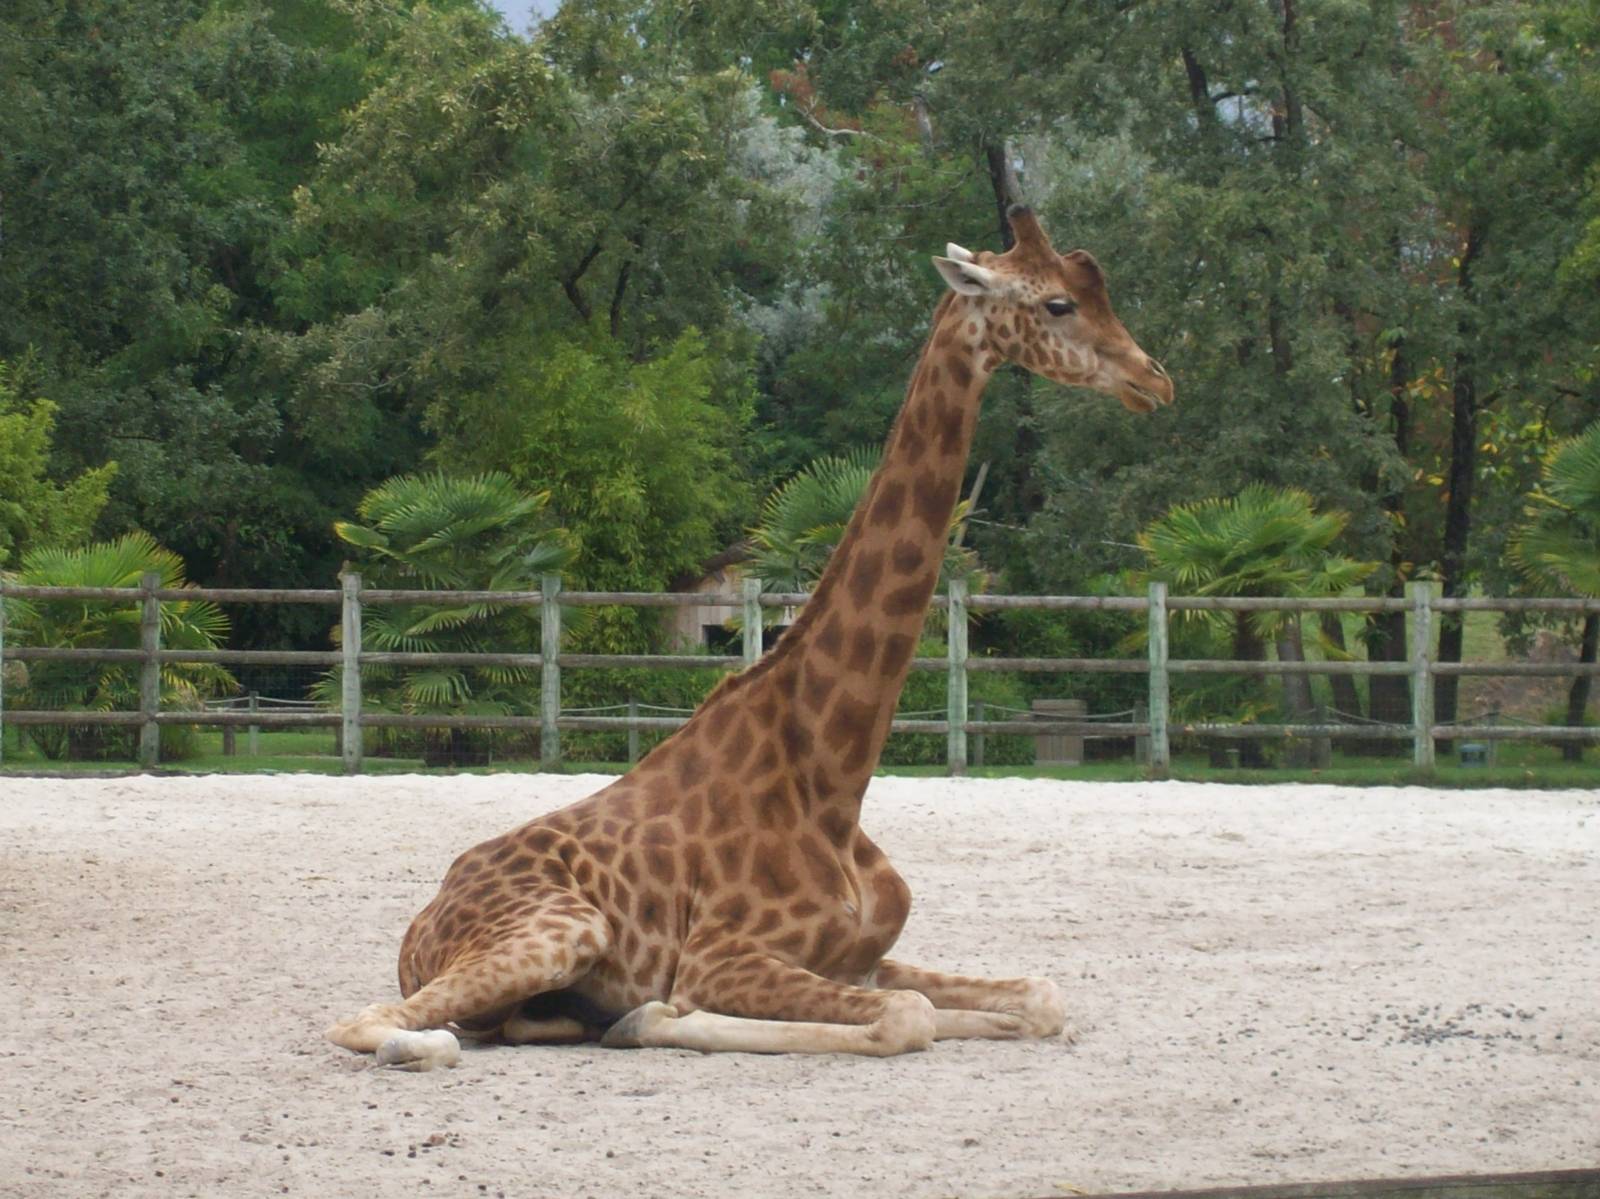 Kordofan giraffe 